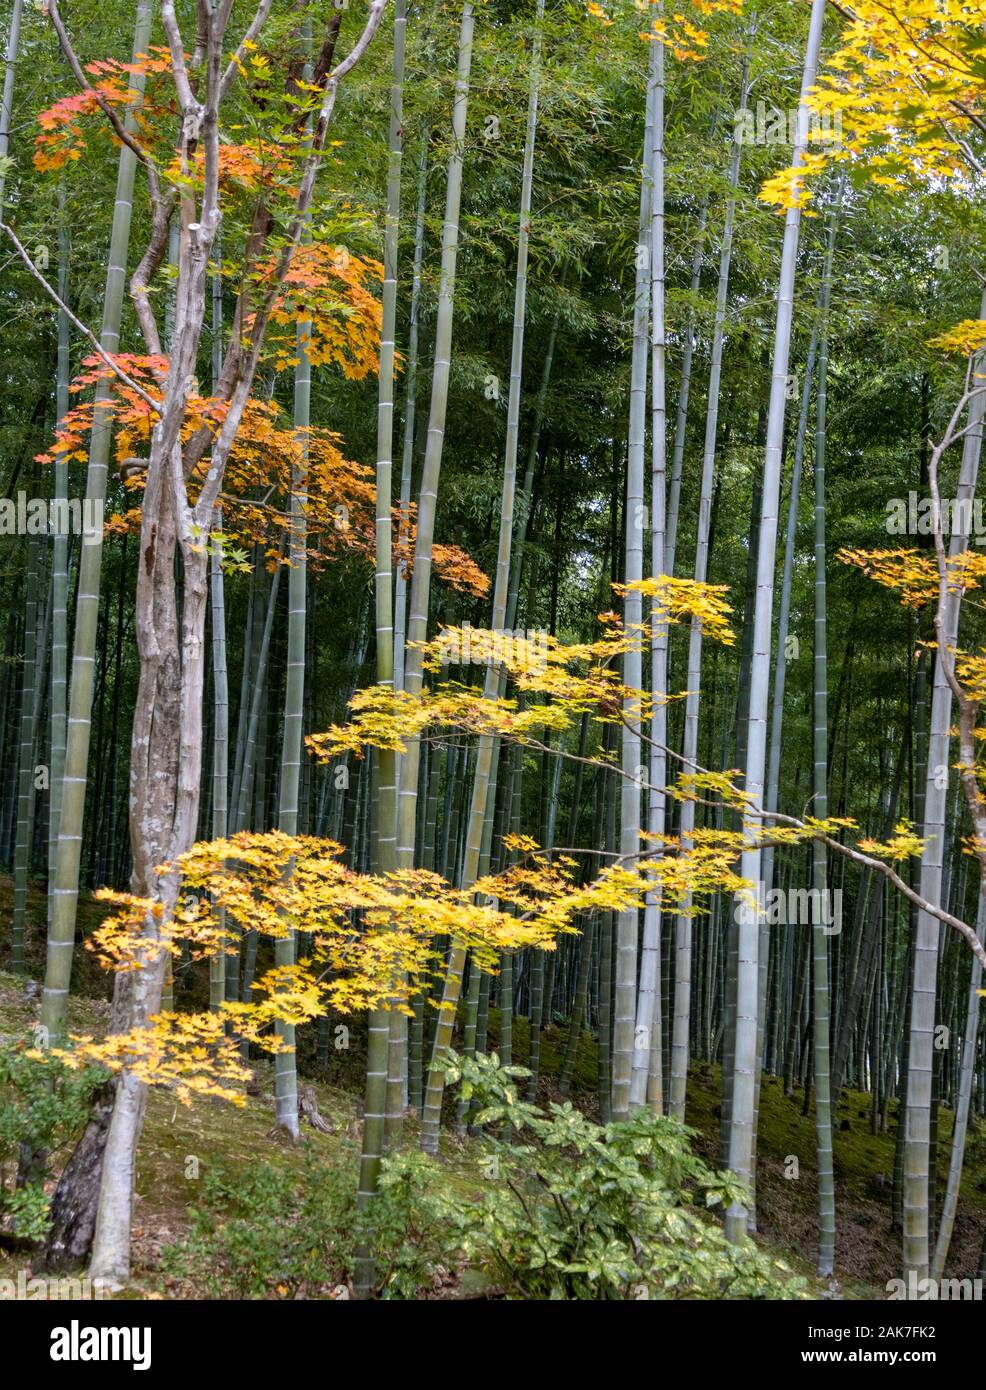 Garten Bäume und Bambus Wald mit Herbstfarben, ursprünglich erstellt von Musō Soseki, der Tenryū-ji Zen-buddhistischen Tempel, Kyoto, Japan Stockfoto